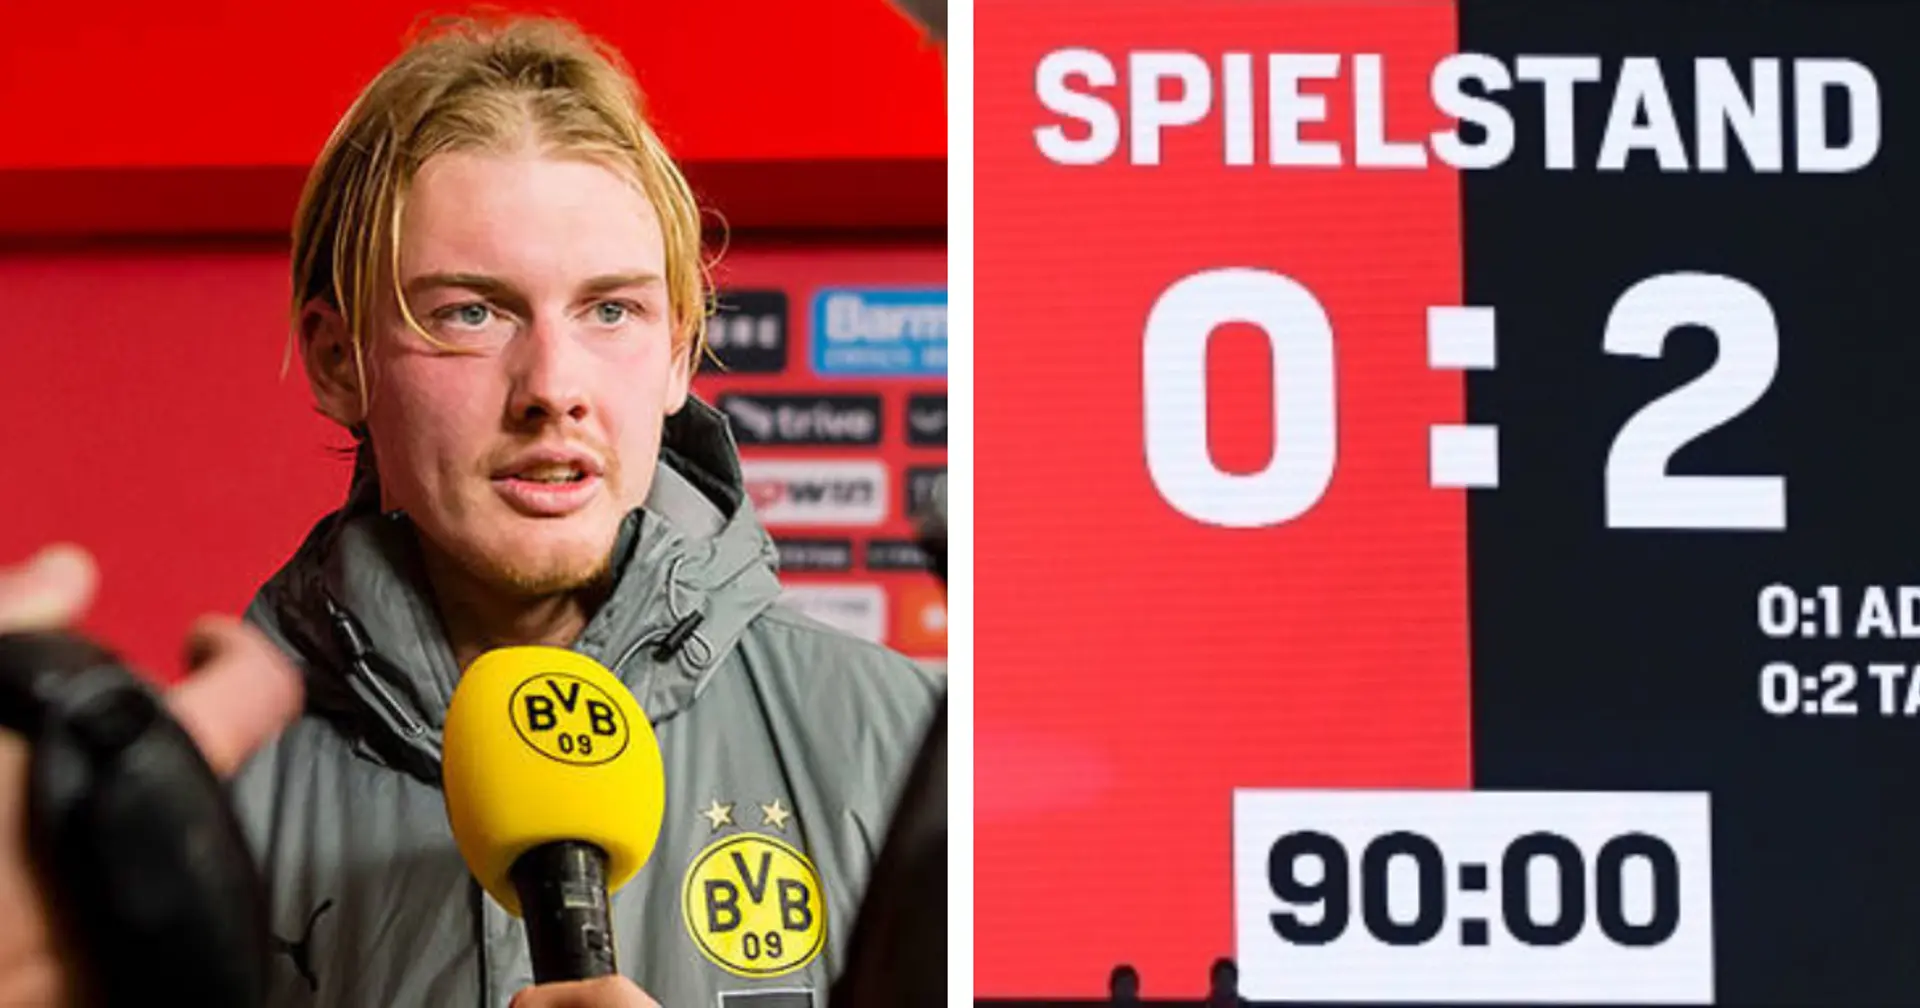 "Wir wachsen durch solche Siege": Brandt freut sich darüber, dass der BVB endlich zu Null gewonnen hat